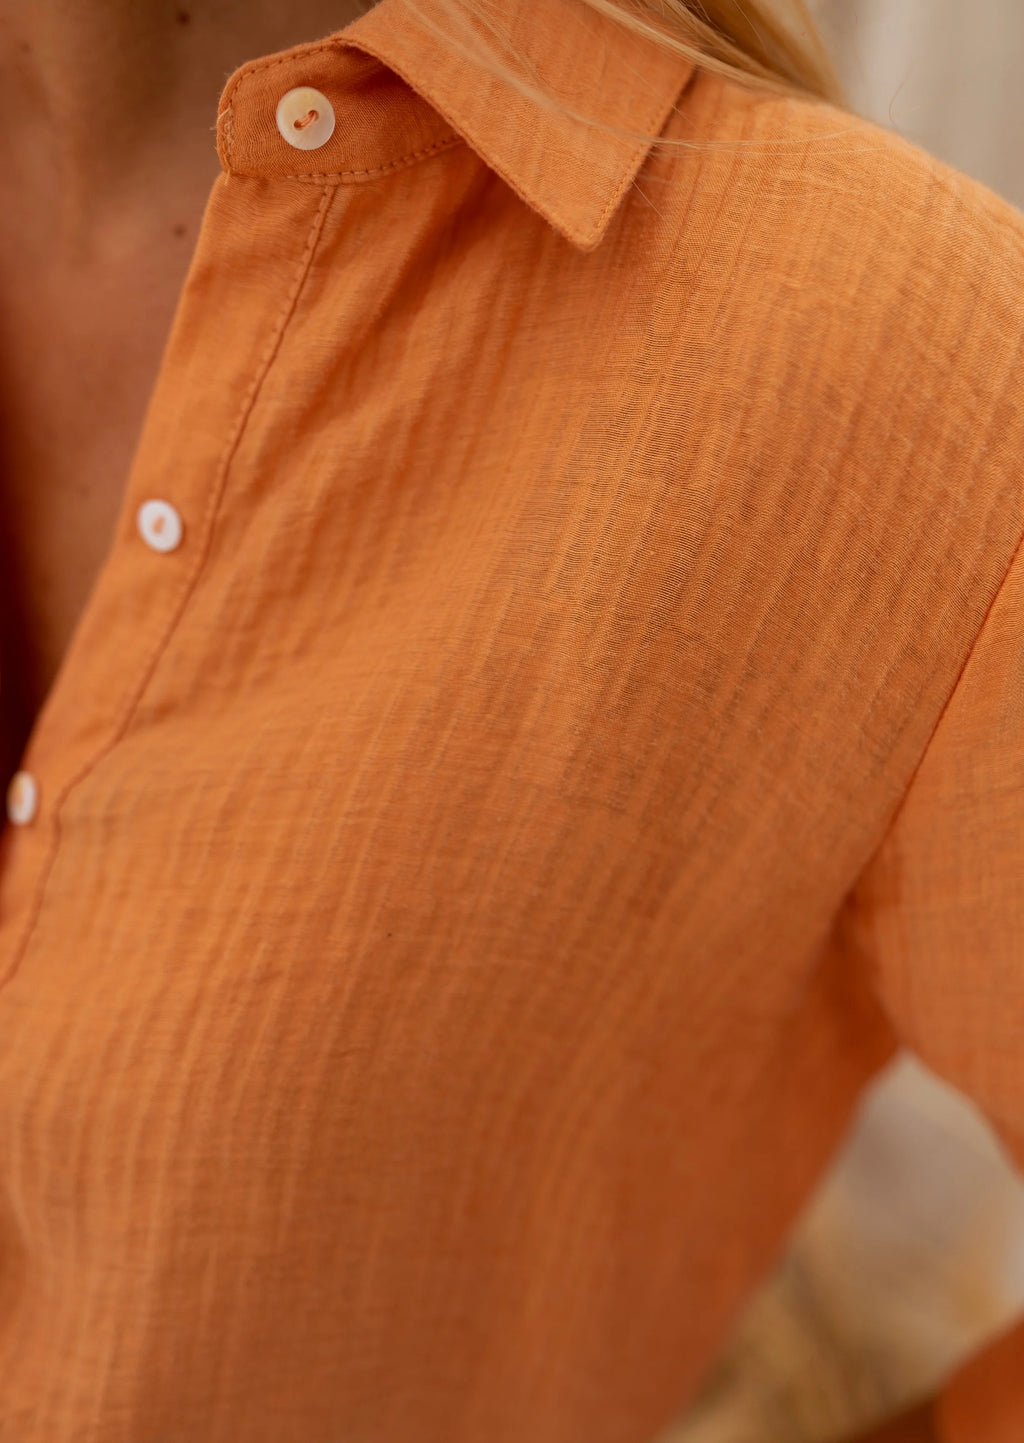 Dalo shirt - orange